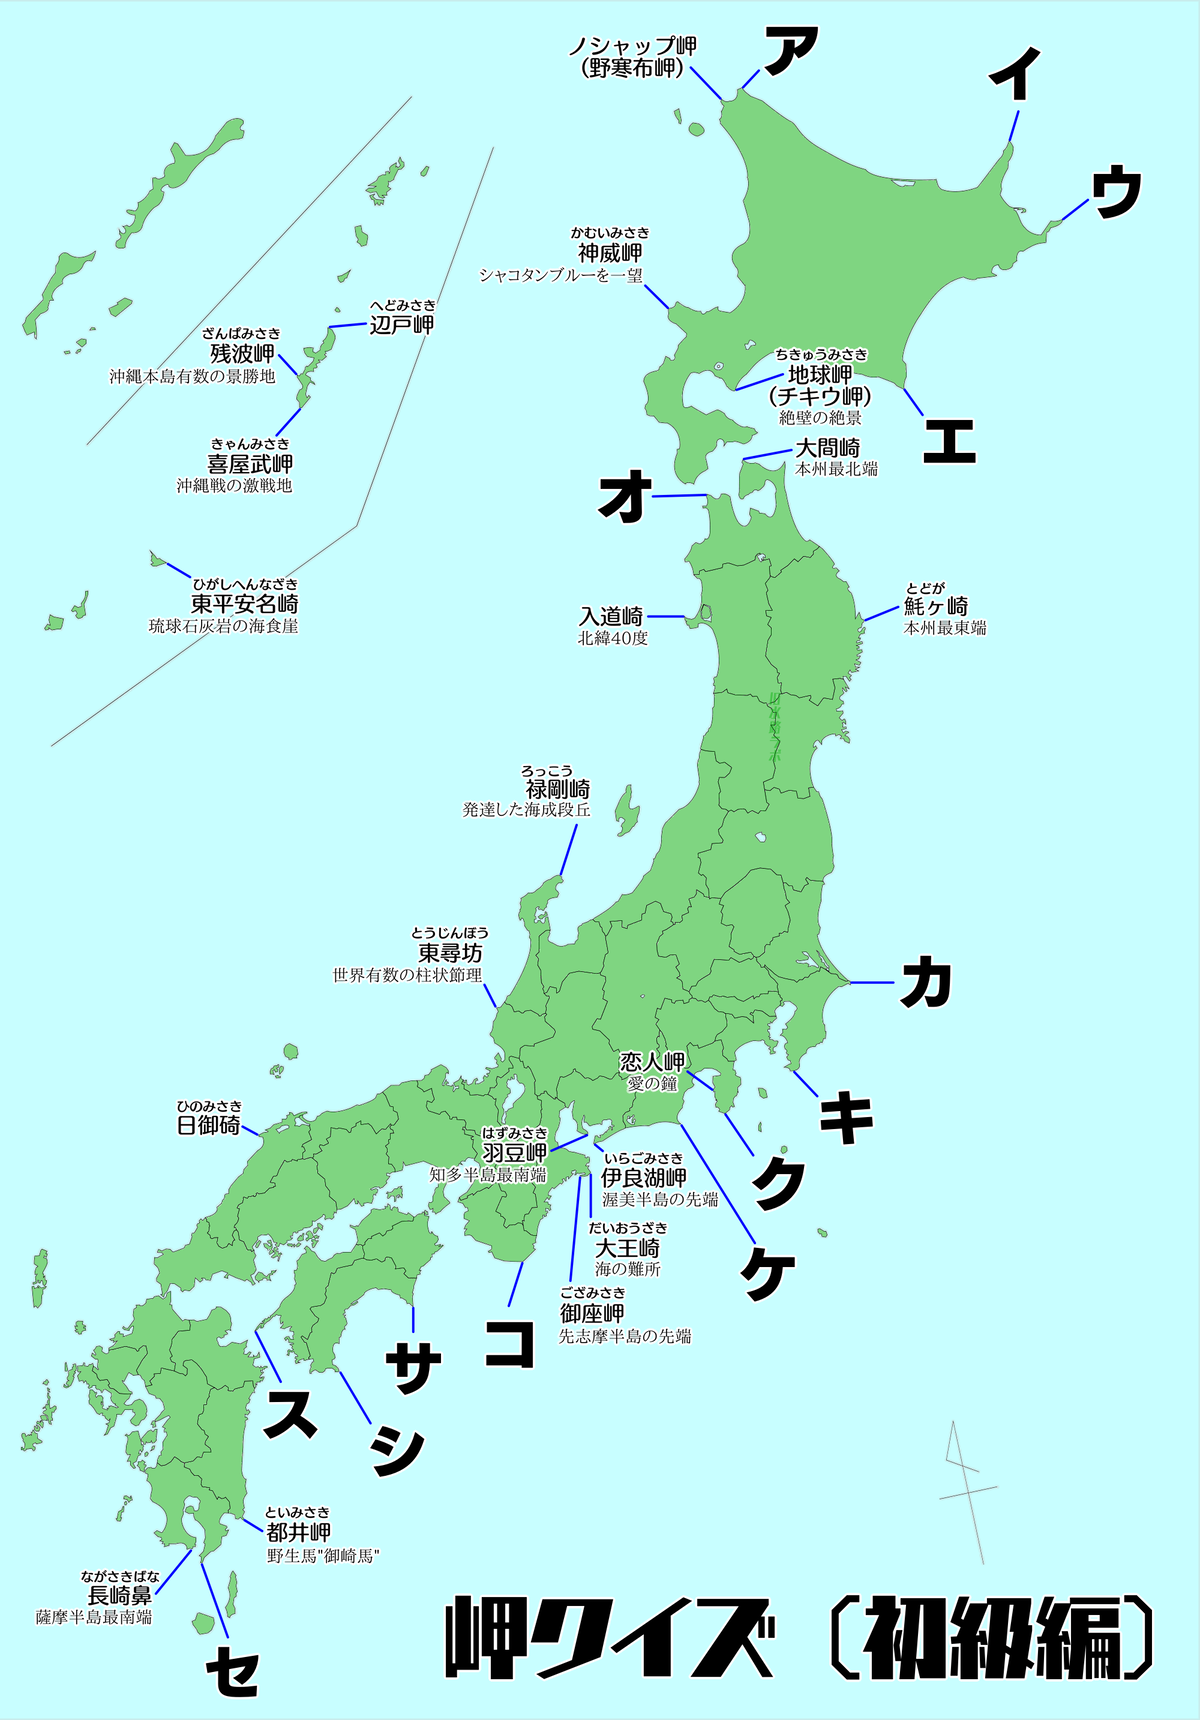 地図 日本の主な岬マップ 改訂版 おまけつき 江戸東京旧水路ラボ 本所支部